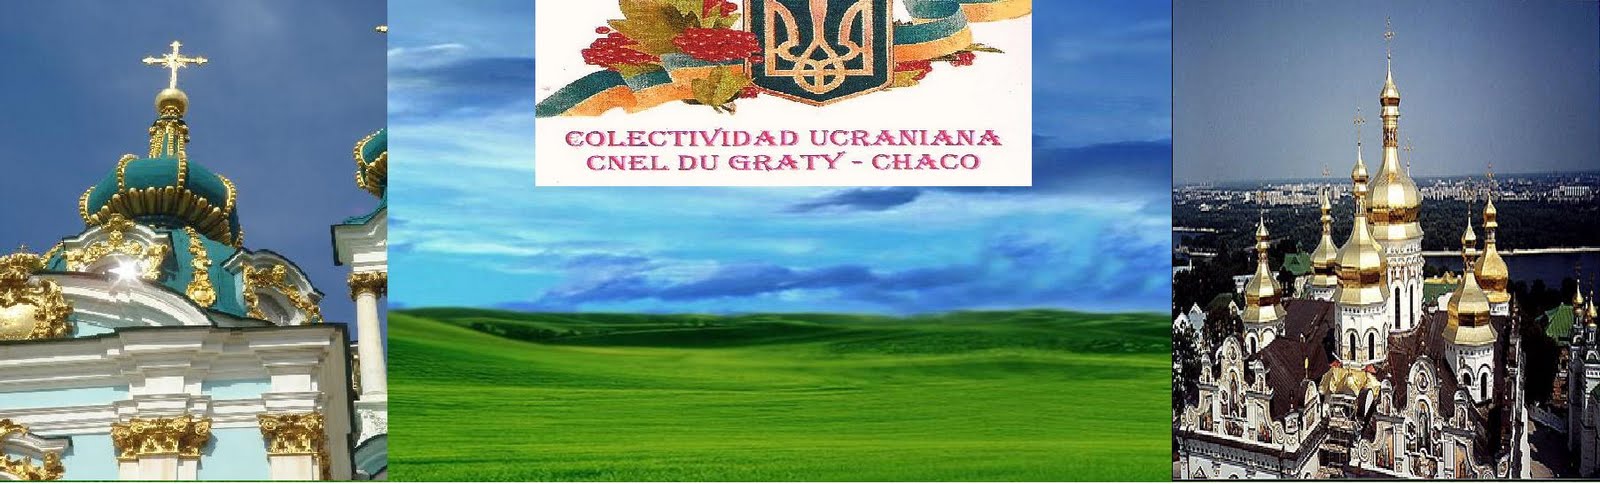 Colectividad Ucraniana de Chaco